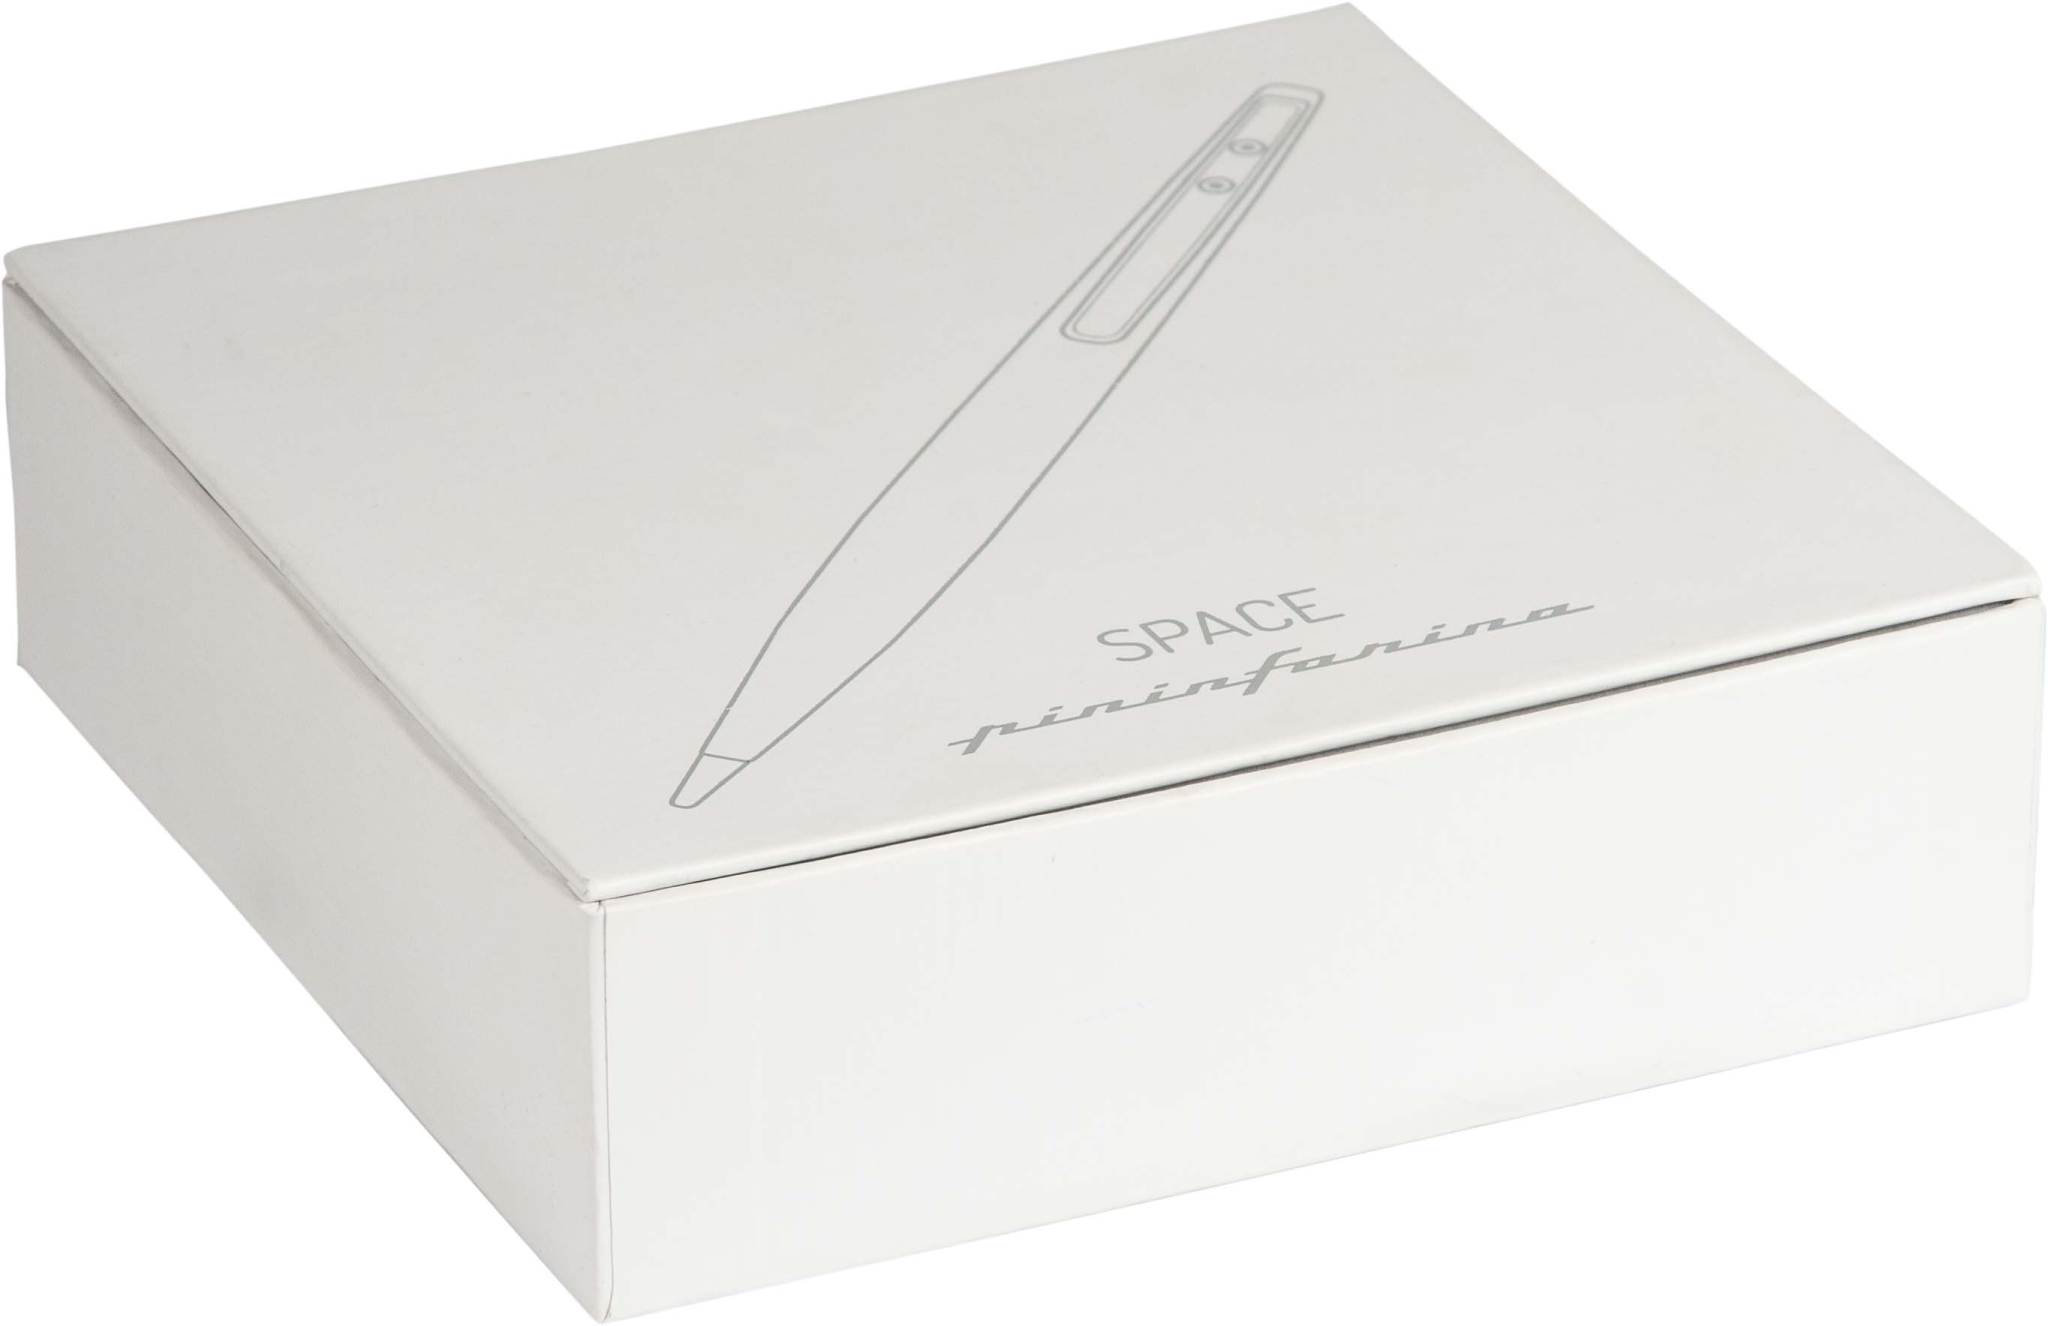 Вечная ручка Pininfarina  SPACE X - BLACK, #000000, пишущий наконечник - сплав металлов ethergraf®, ручка - магний, подставка - алюминий